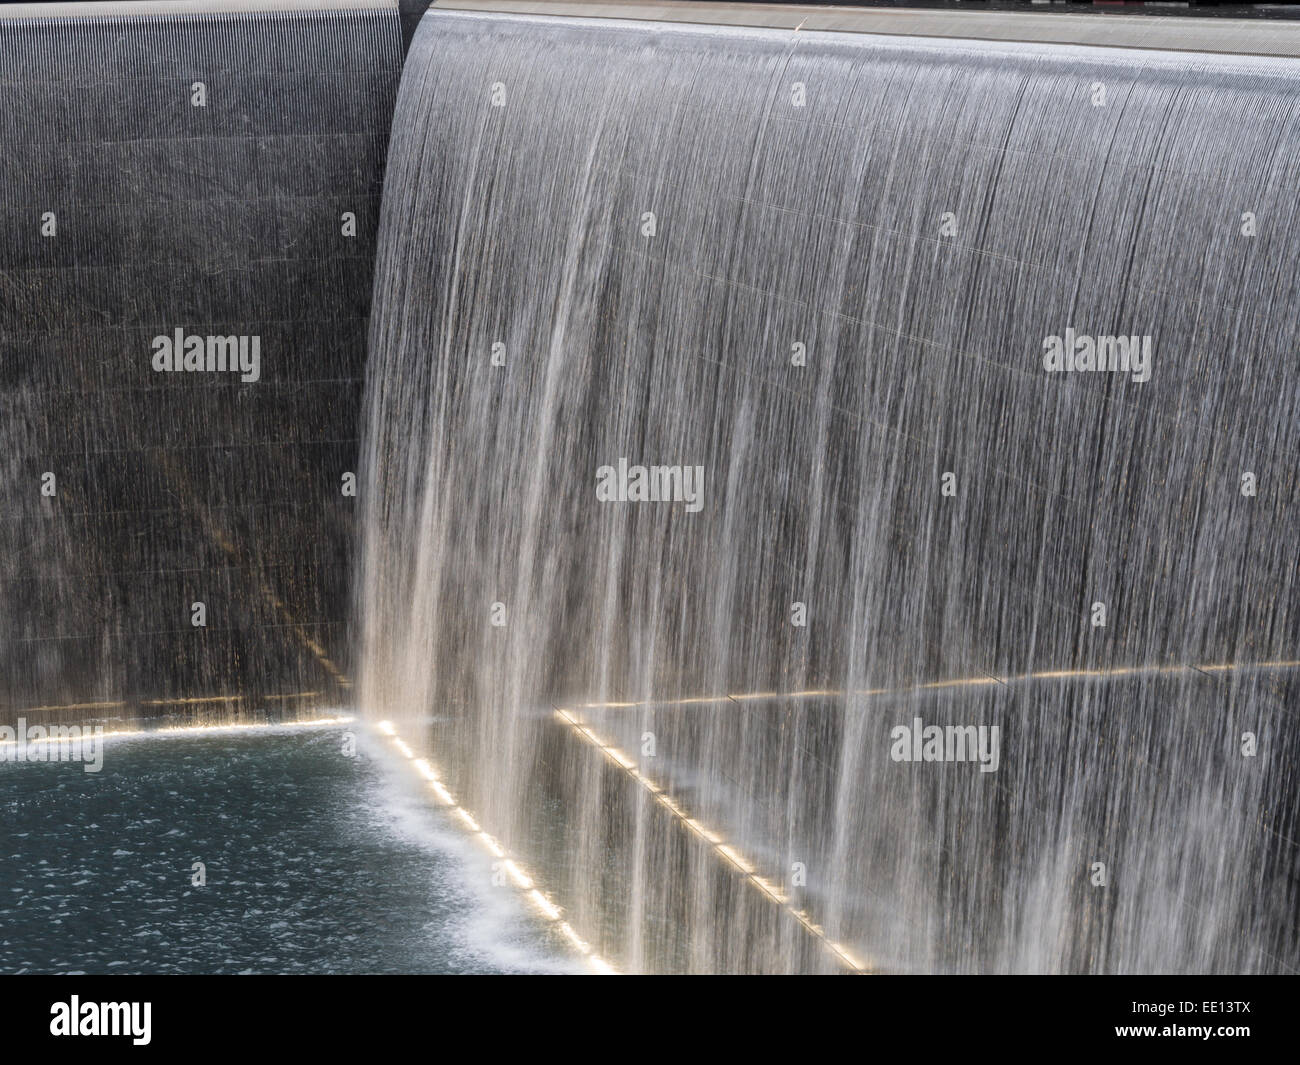 Falls Memorial : une feuille de la chute d'eau. Détail de la cascade qui compose une partie du World Trade Center 9/11 memorial Banque D'Images